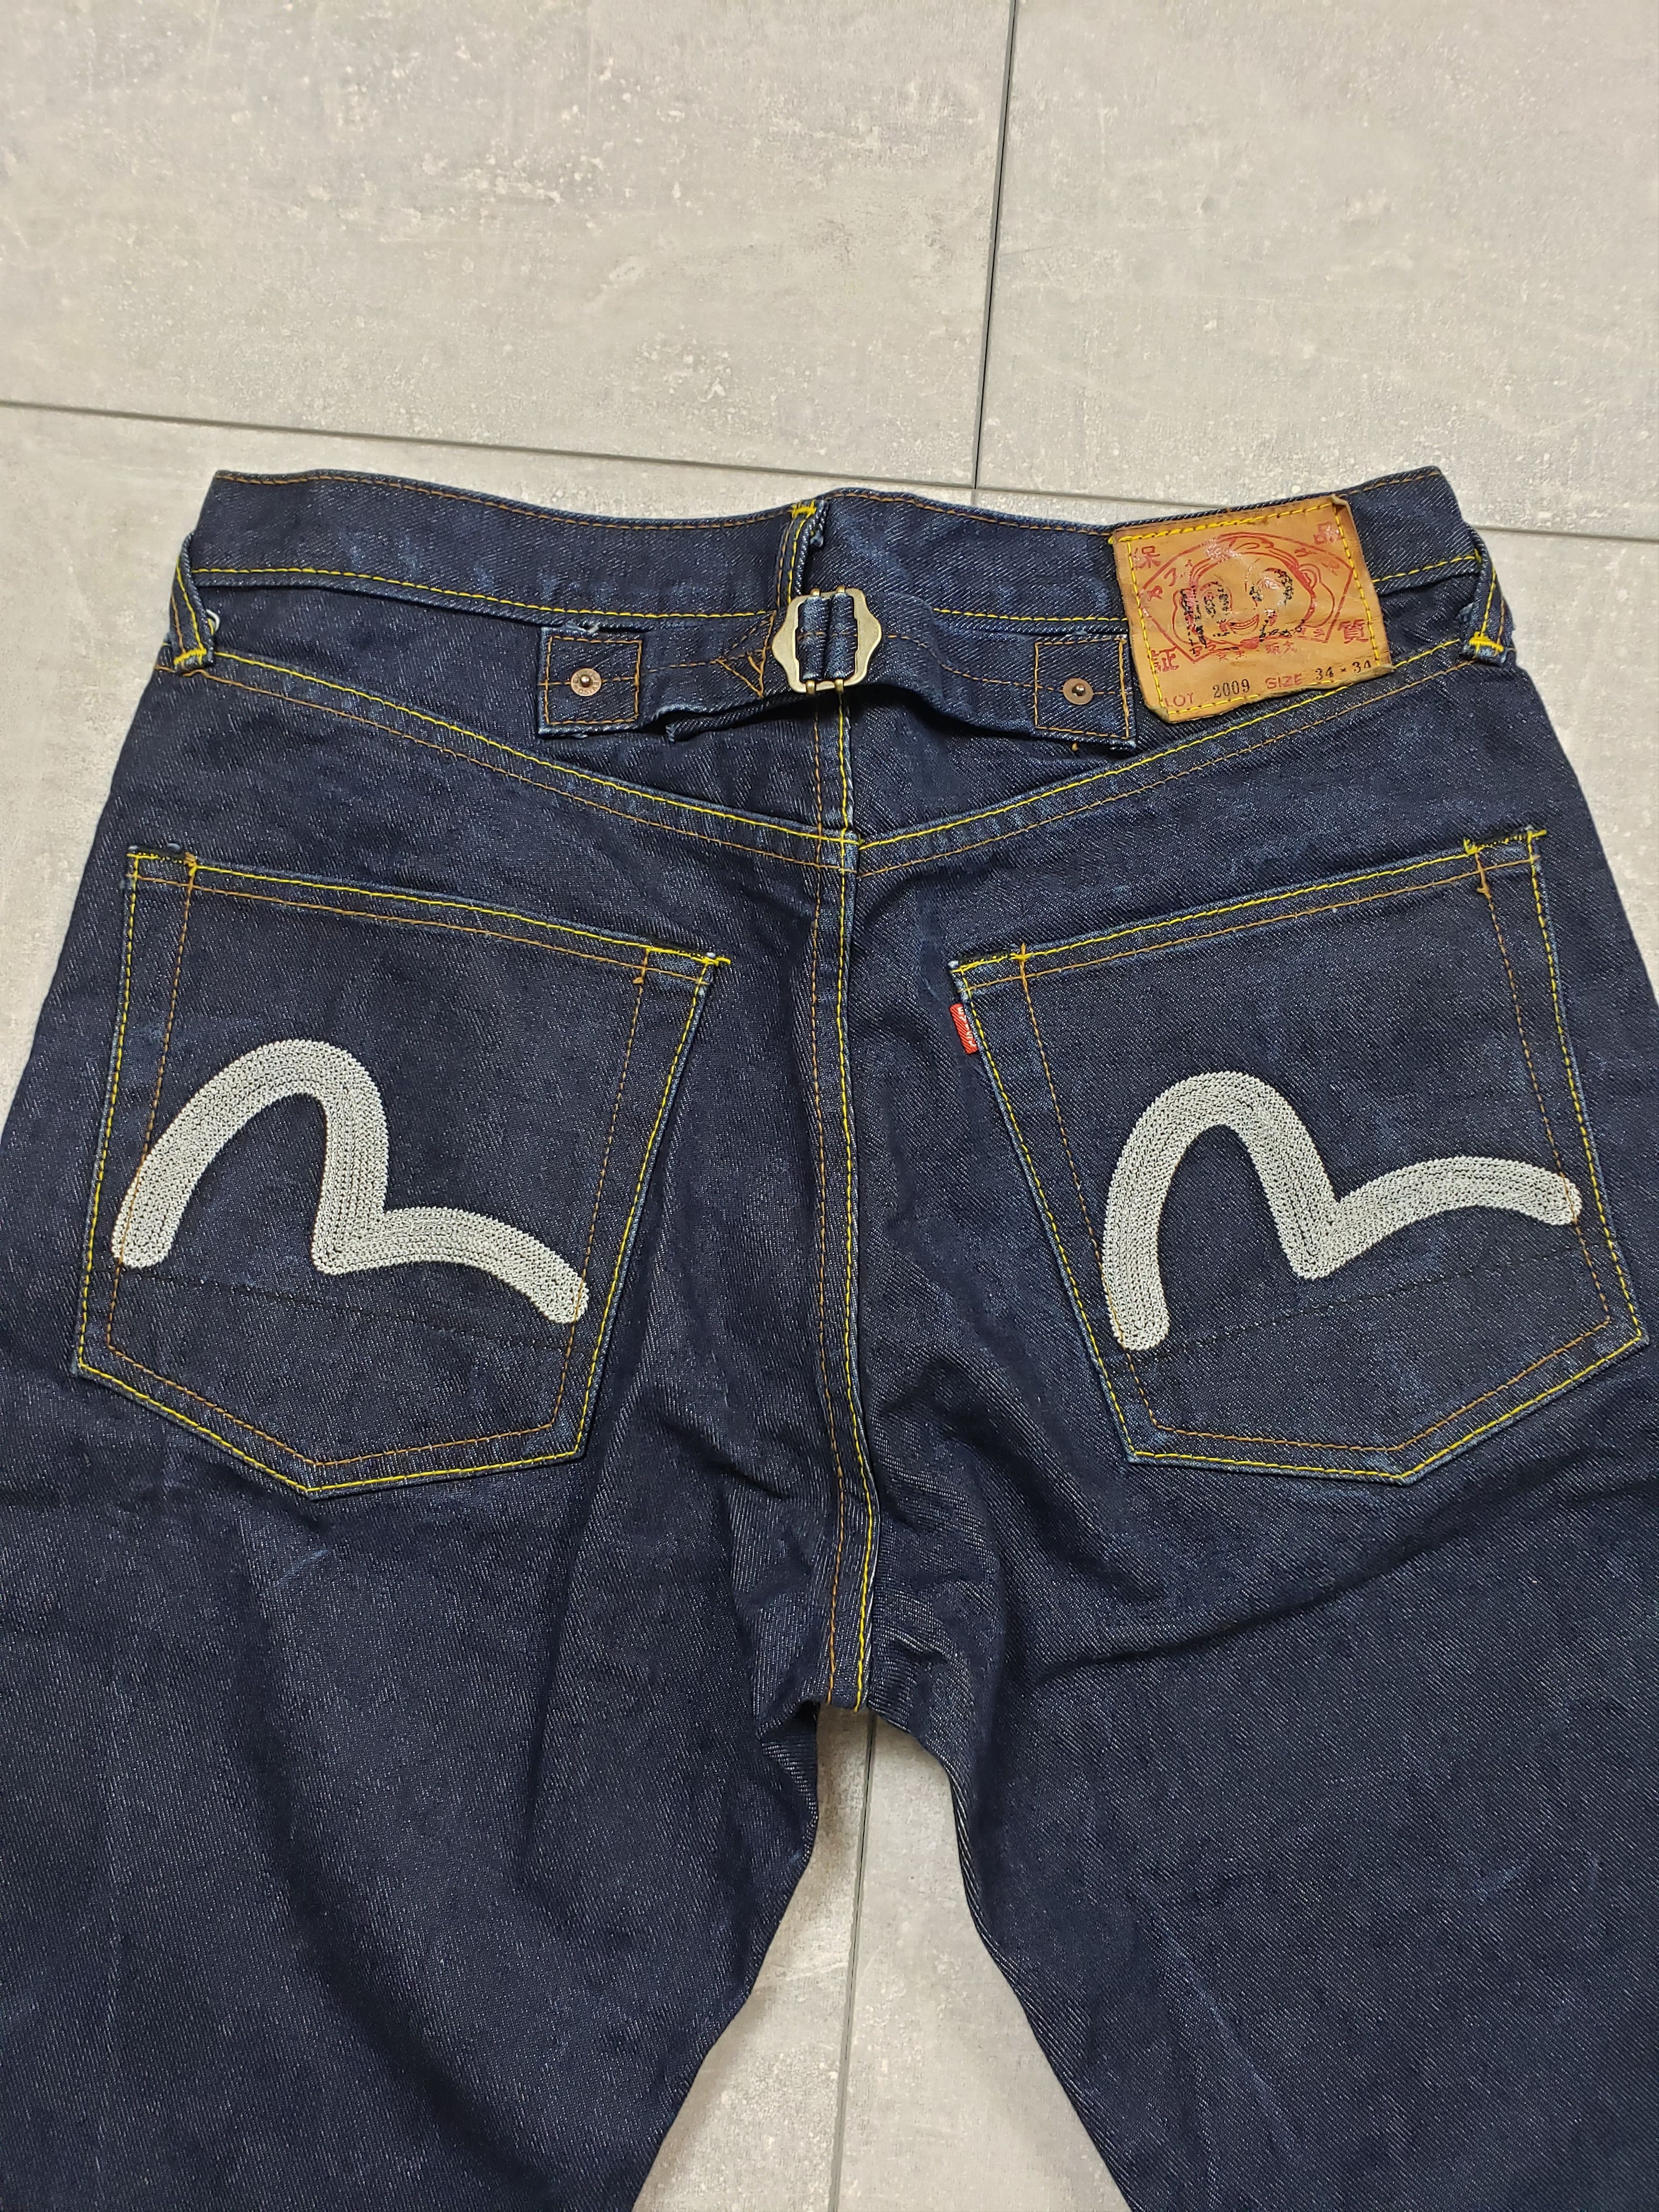 Evisu Evisu denim pants big logo jeans selvedge Size US 34 / EU 50 - 2 Preview